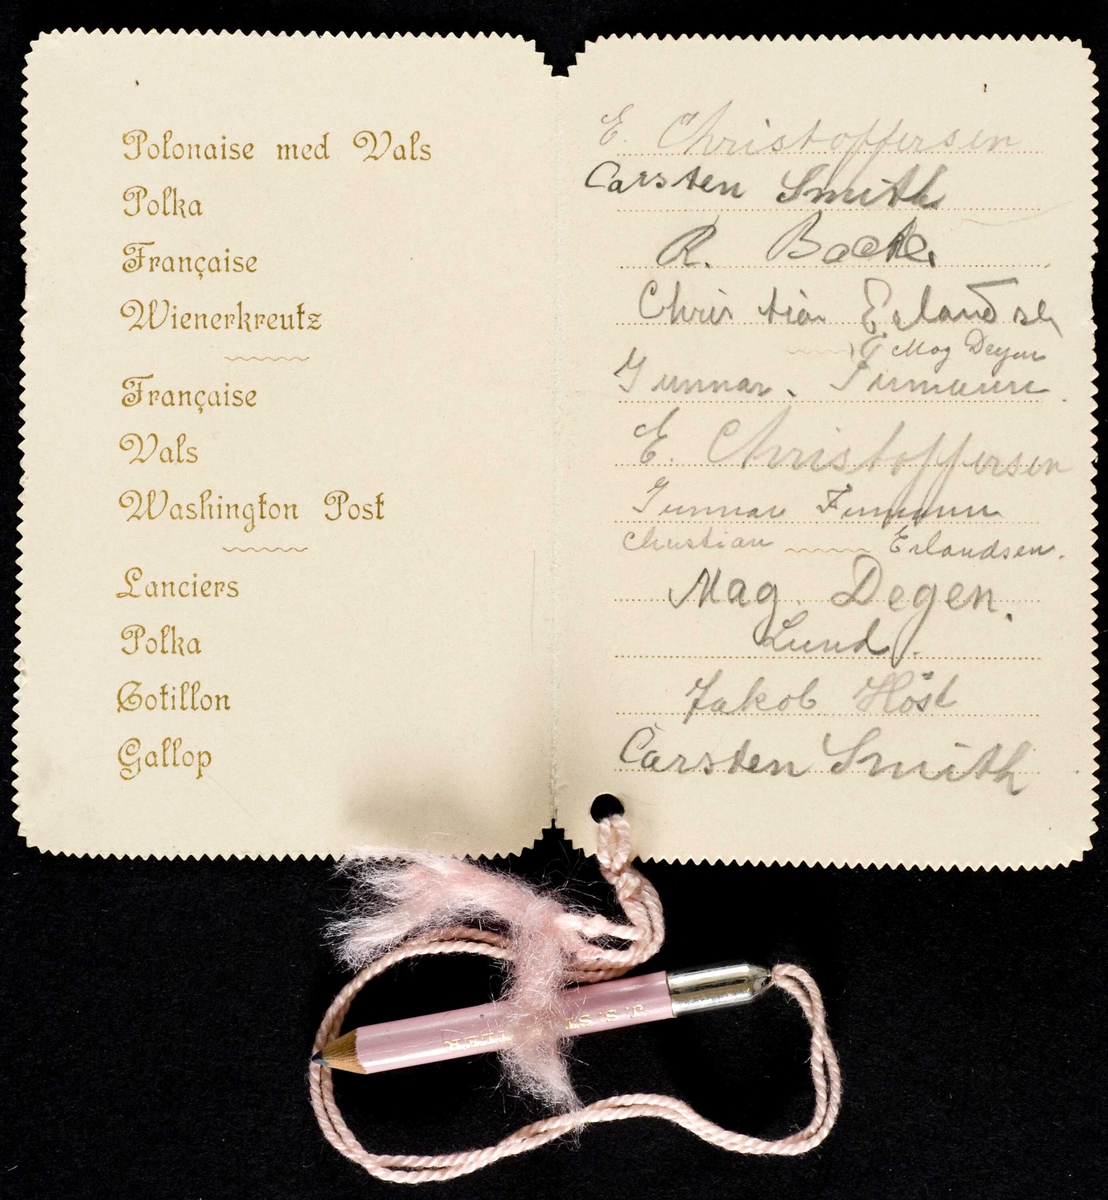 Ballkort fra 1907 med trykt dekor og danseliste inni. En snor med rosa blyant er festet i kortet.